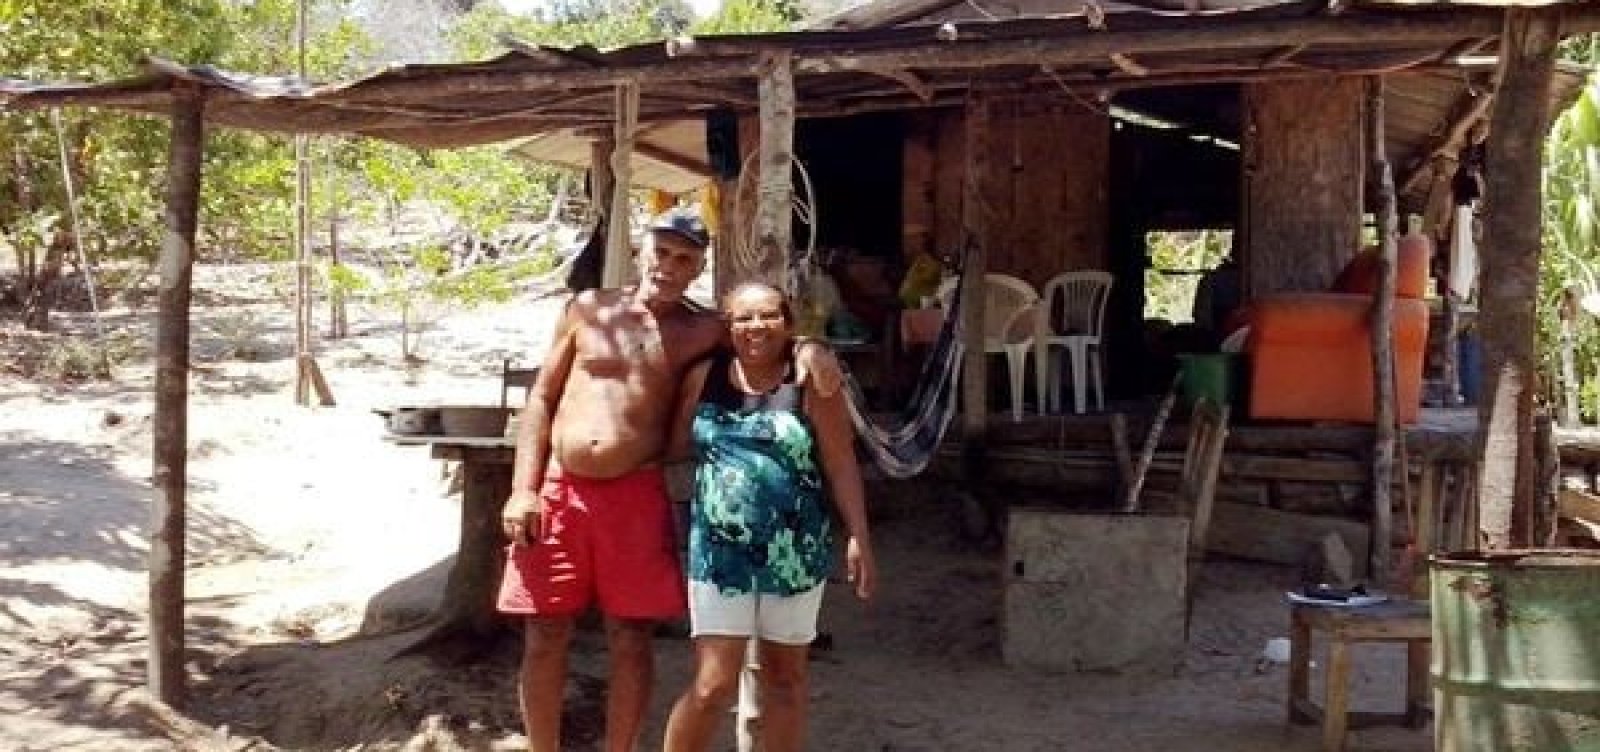 Incra reconhece território quilombola no Recôncavo baiano